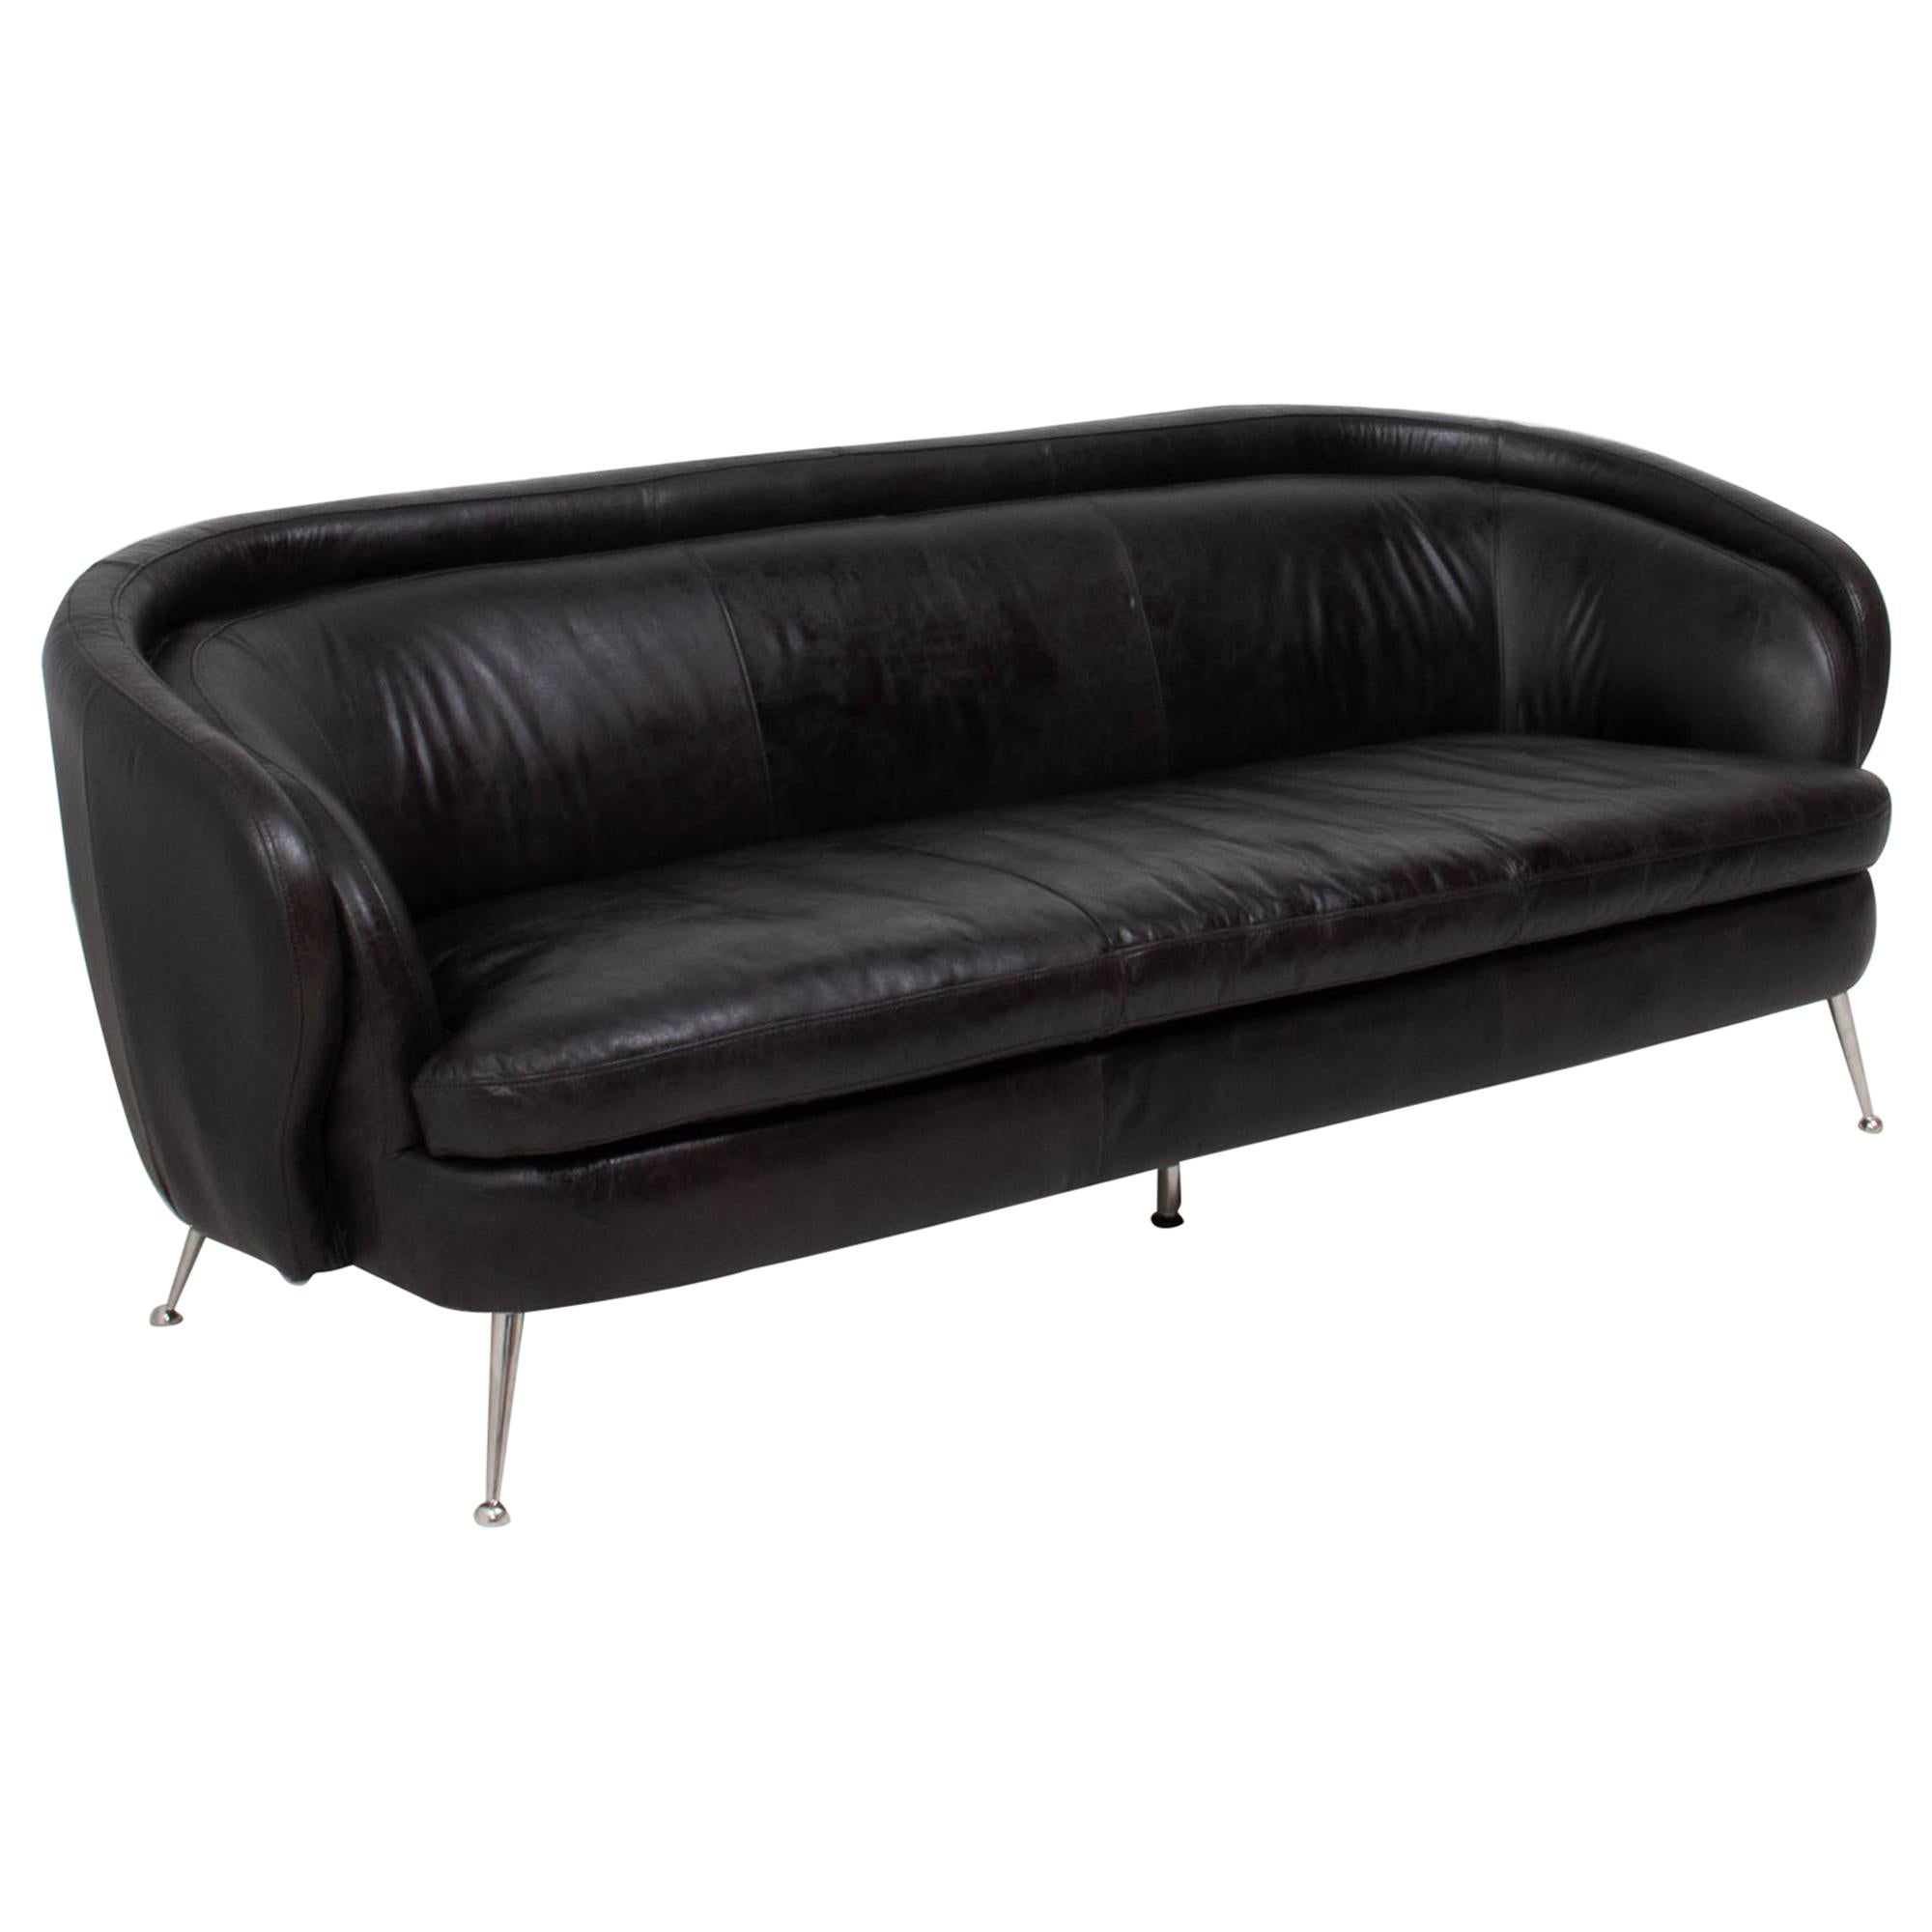 Vintage Italian Style Black Leather Sofa, 1960s